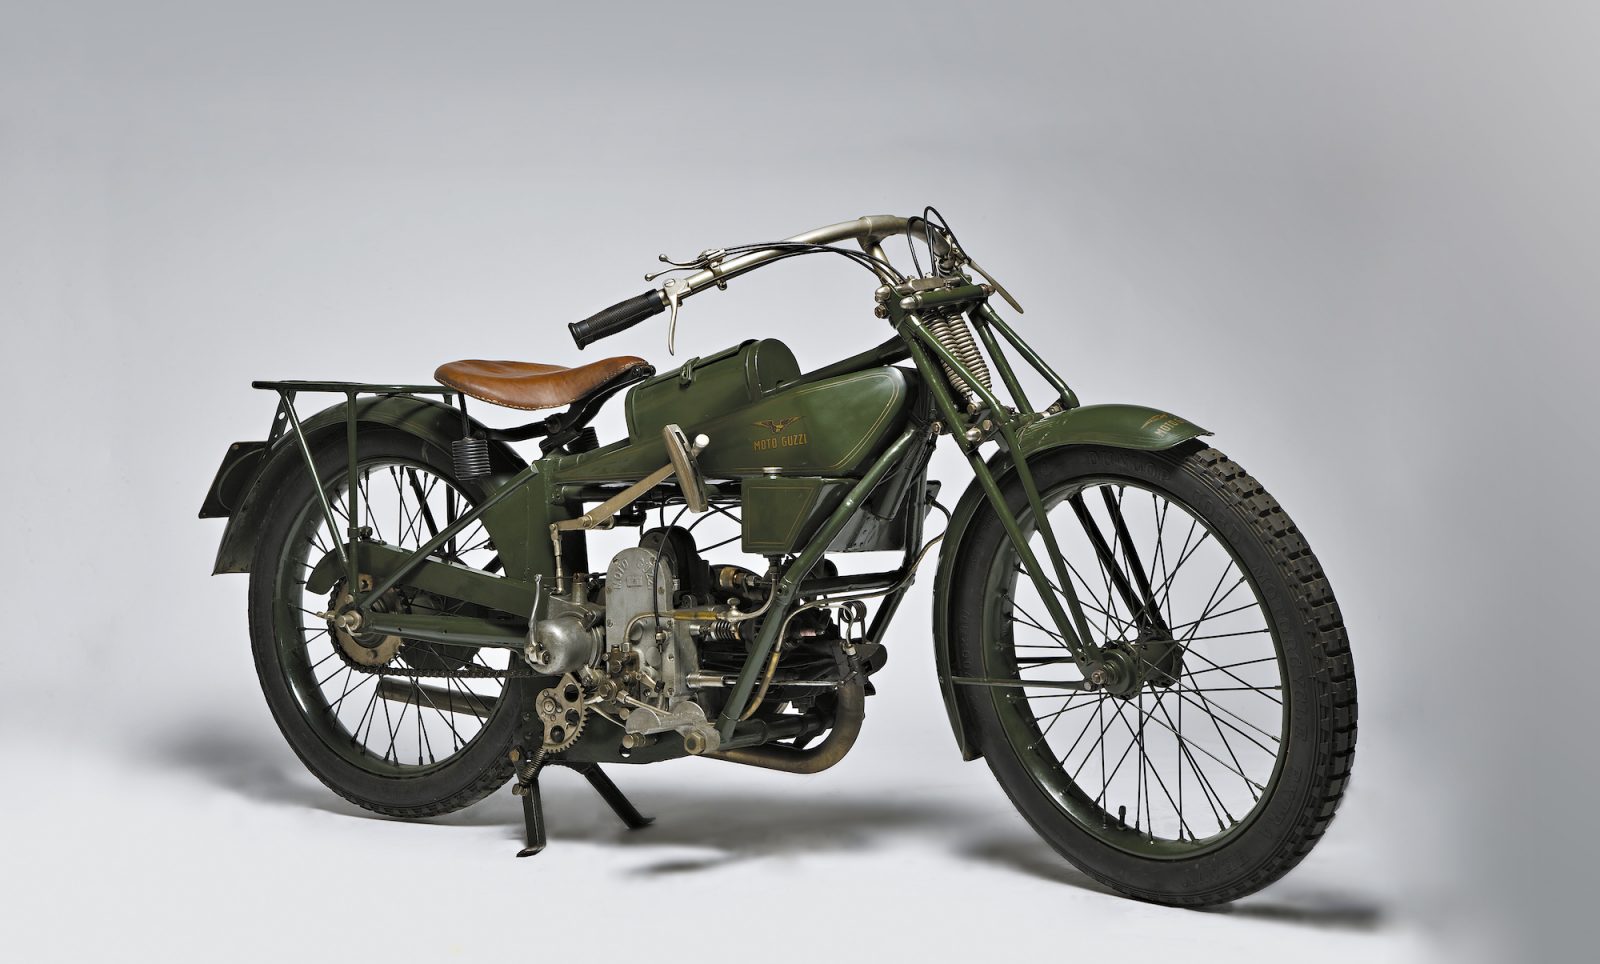 Collezione di moto d'epoca Luigi Baroncelli:  Moto Guzzi Tipo Normale, 500 cc. anno 1921. E' il primo modello di moto costruita dalla Guzzi.